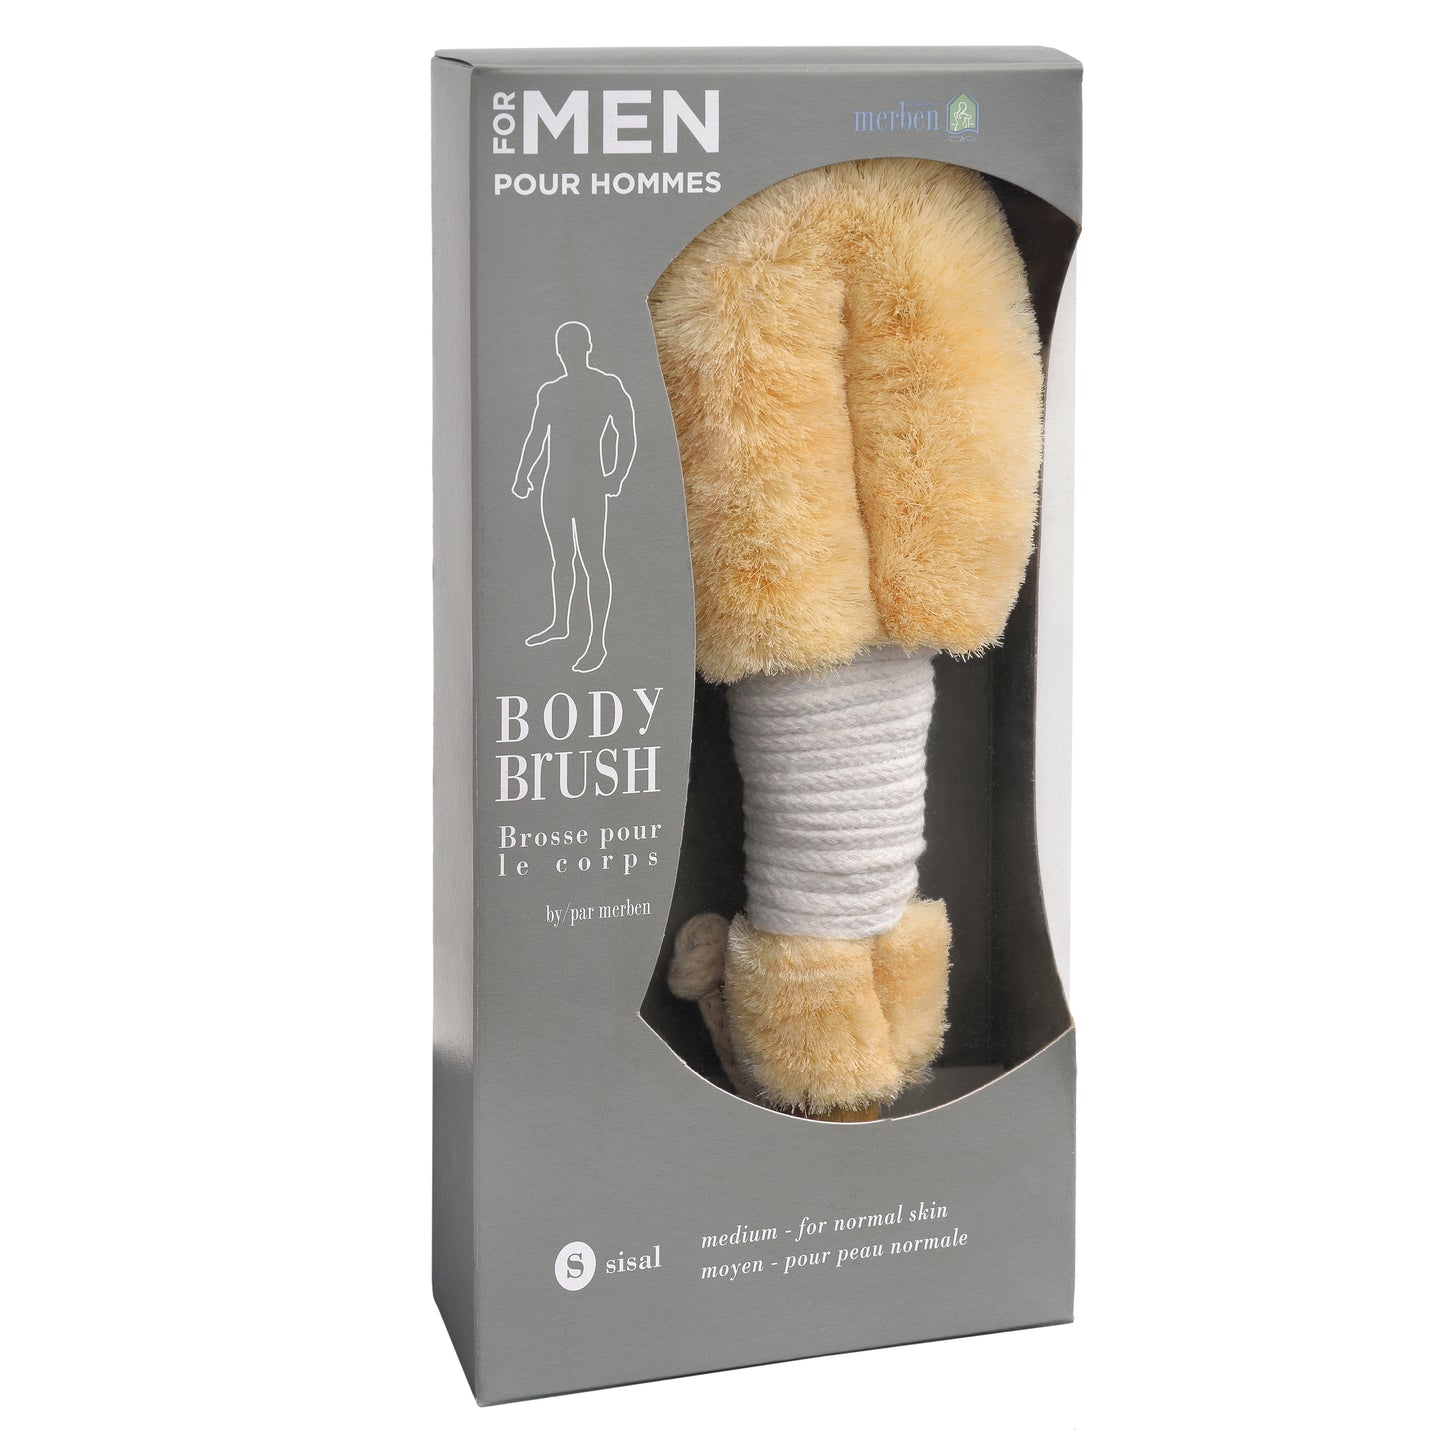 Men's Sisal Medium Body Brush - White Cord